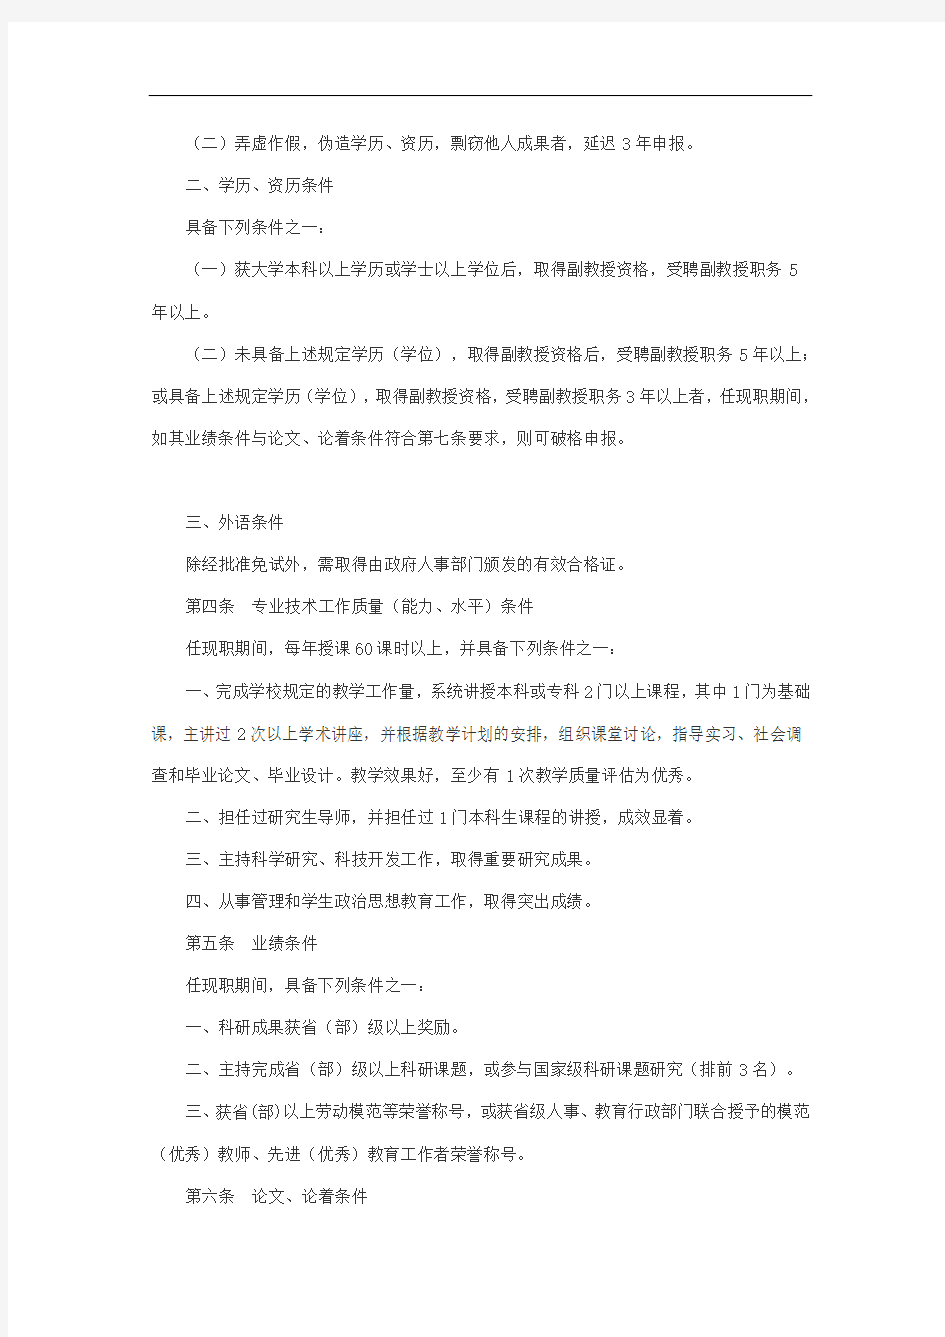 江西省高等学校教授资格条件(试行)